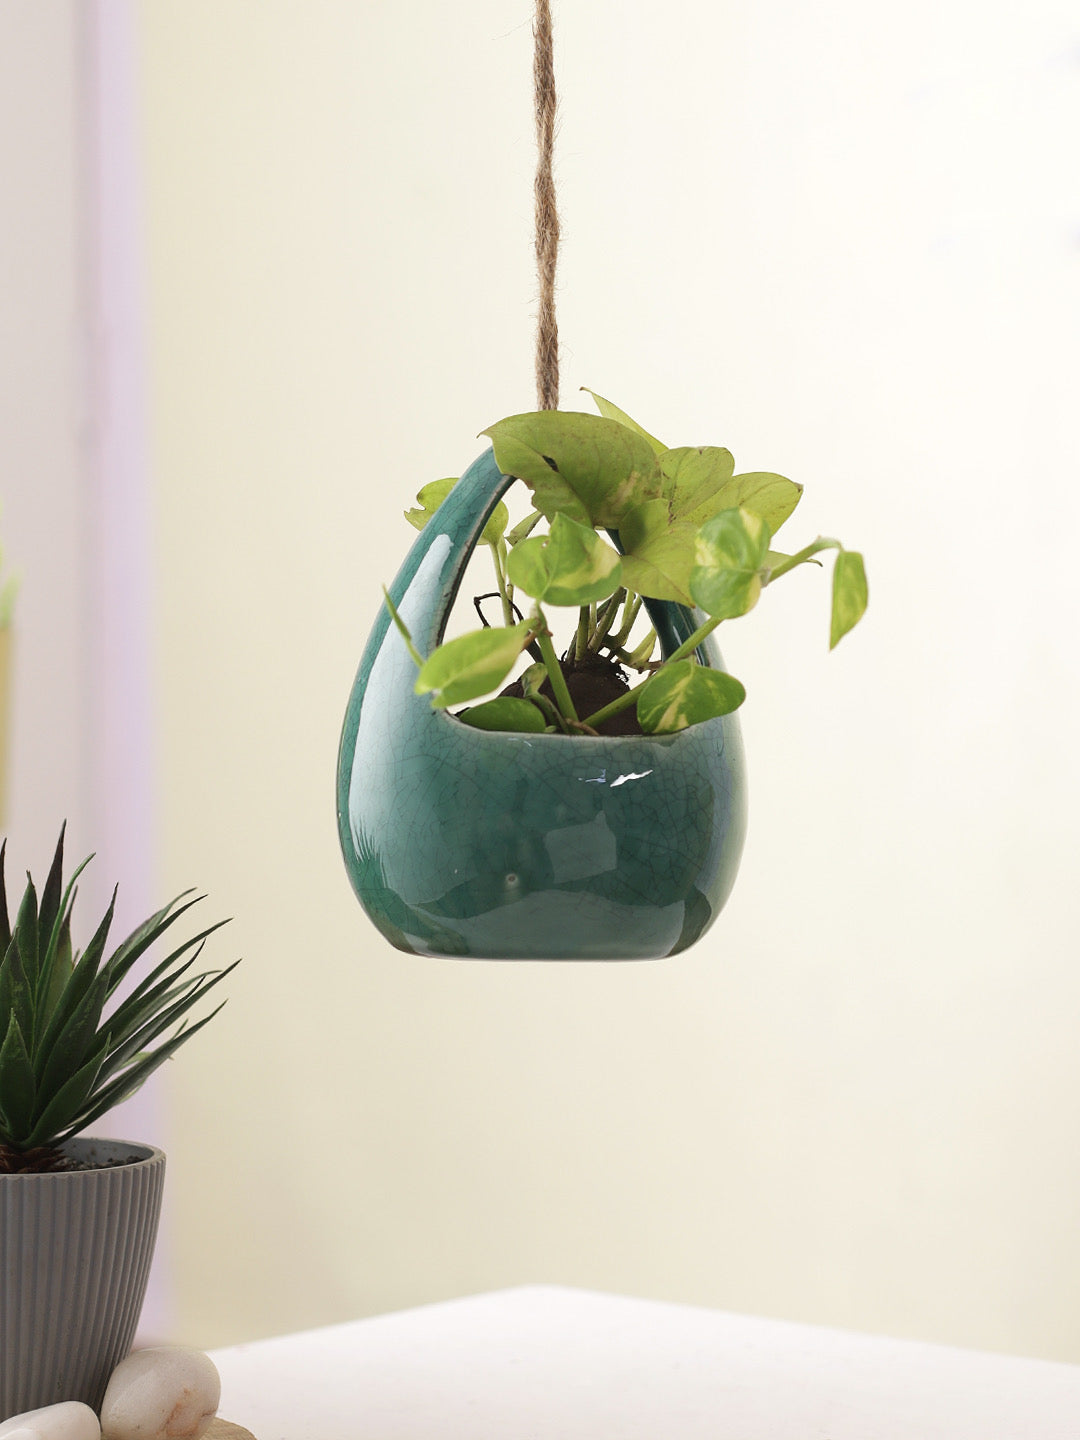 Teal Green Ceramic Hanging Planter - Default Title (CH20279GR)